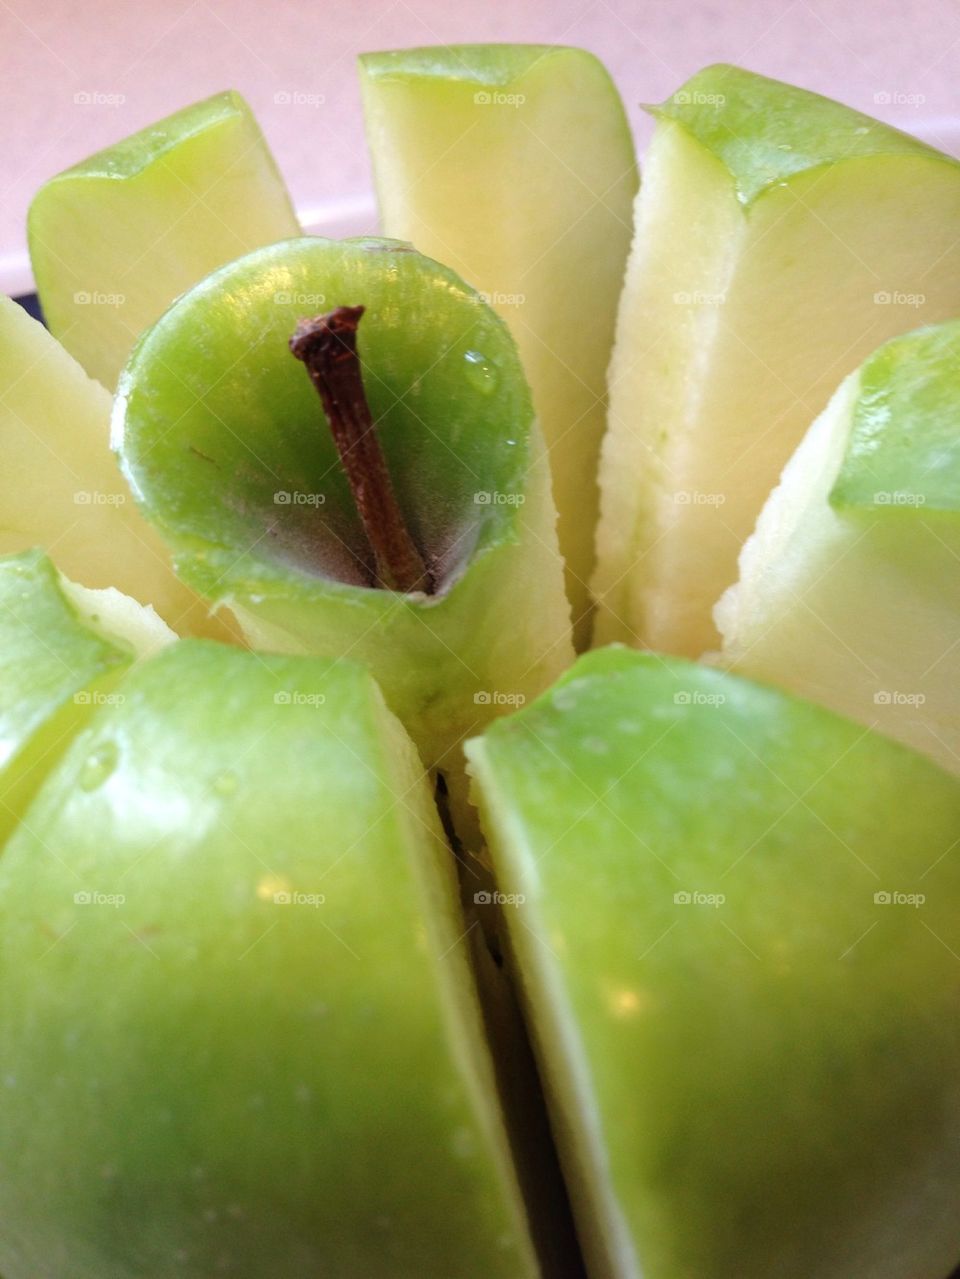 Green apple in an apple slicer